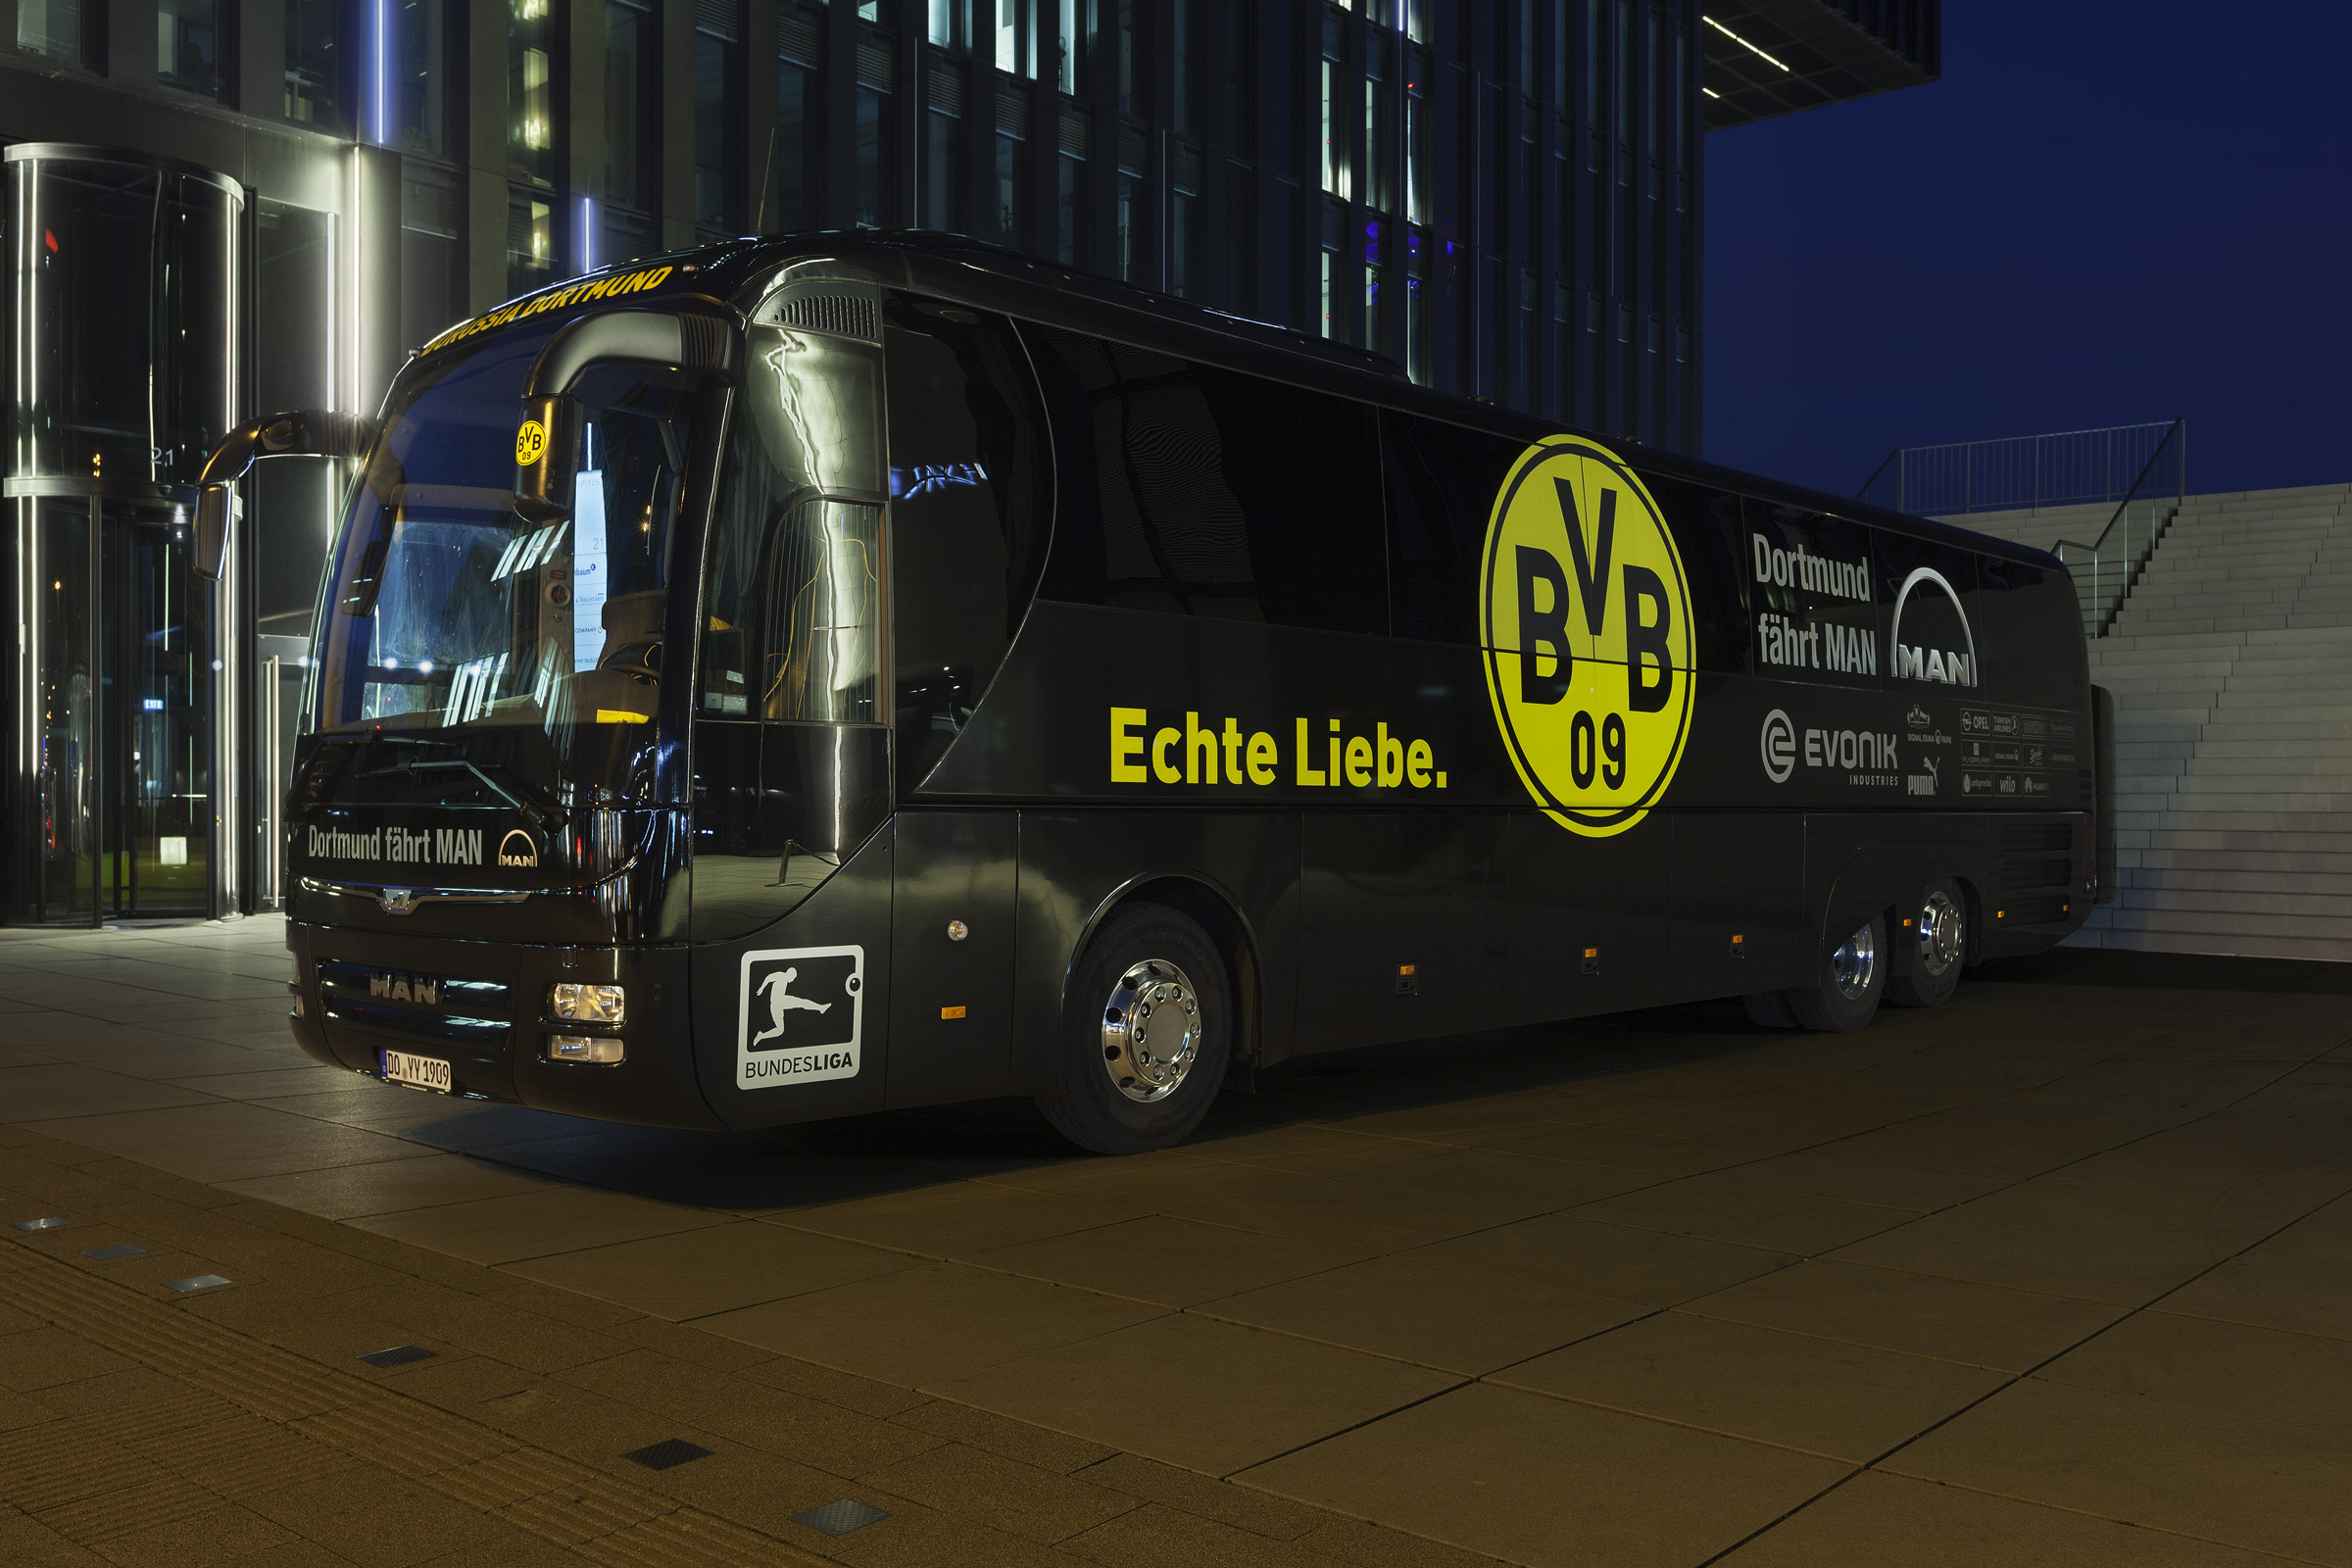 Echte Liebe – Mannschaftsbus Borussia Dortmund in Düsseldorf